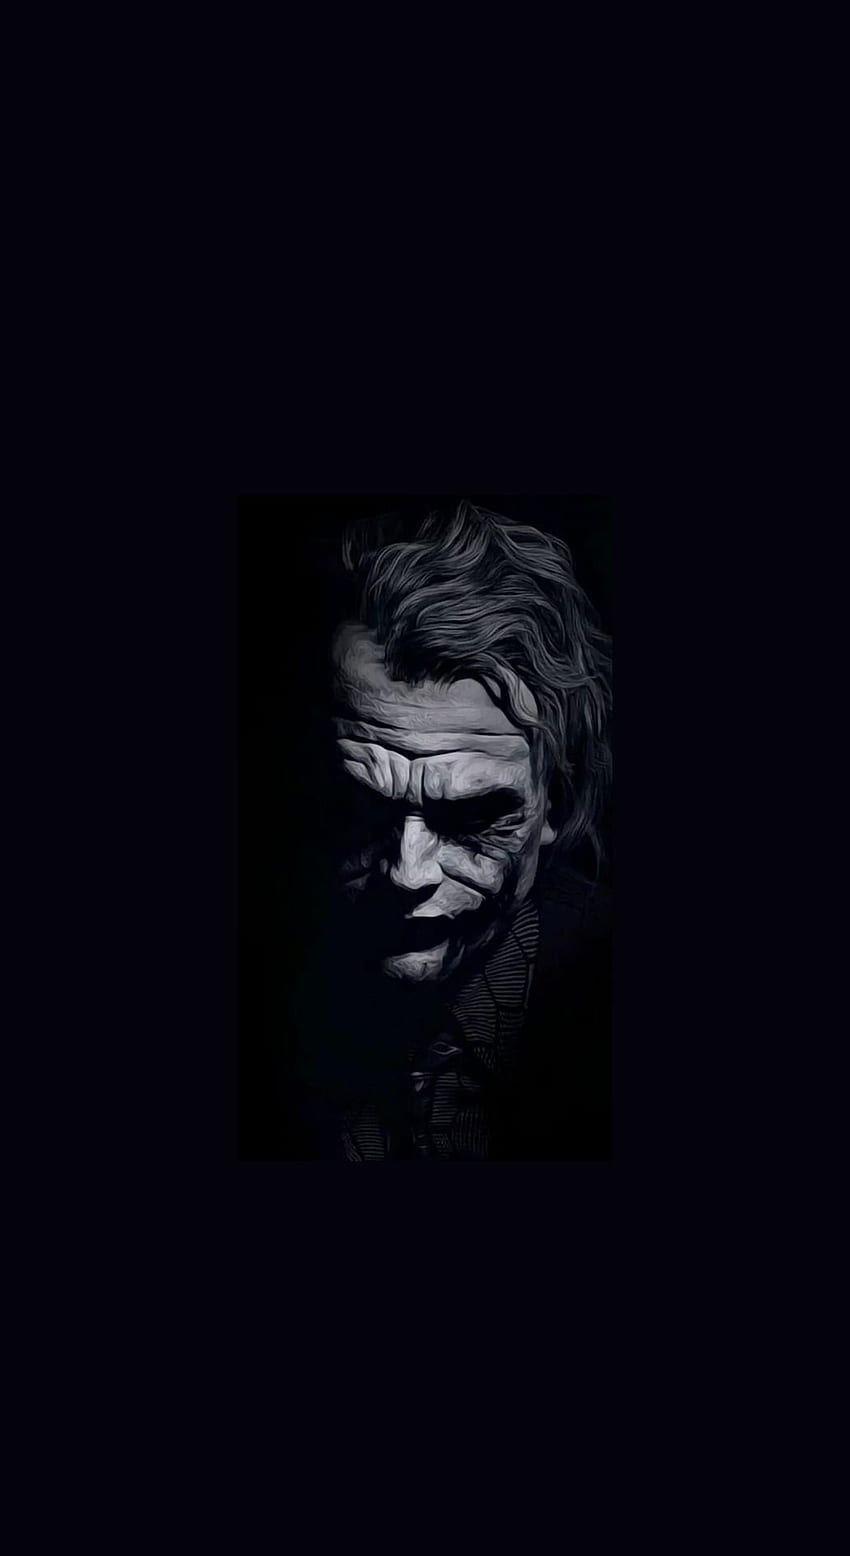 Black Joker - Black Joker updated their cover photo.